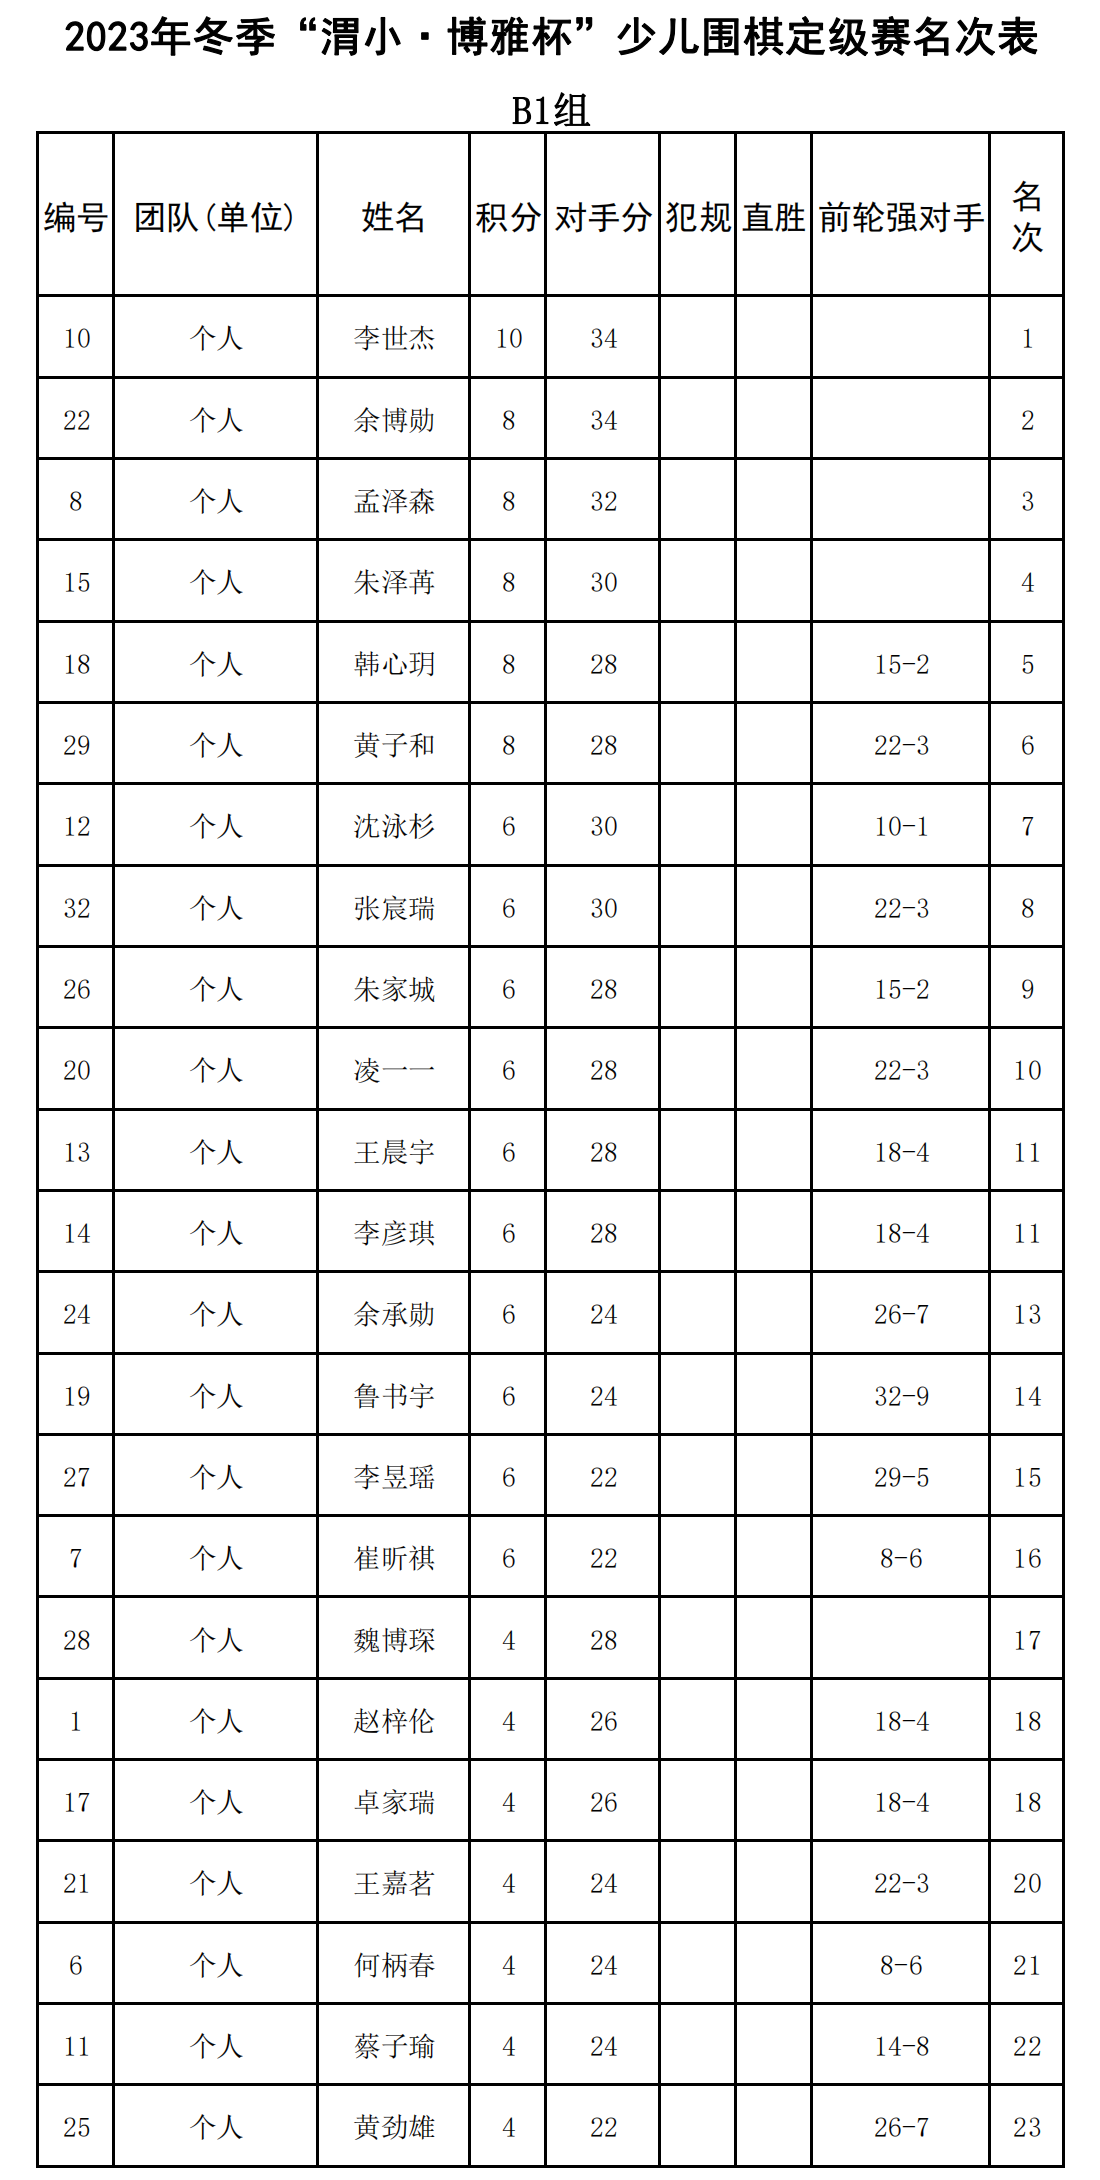 2023年冬季“渭小·博雅杯”少儿围棋定级赛B1组(名次表)_00.png